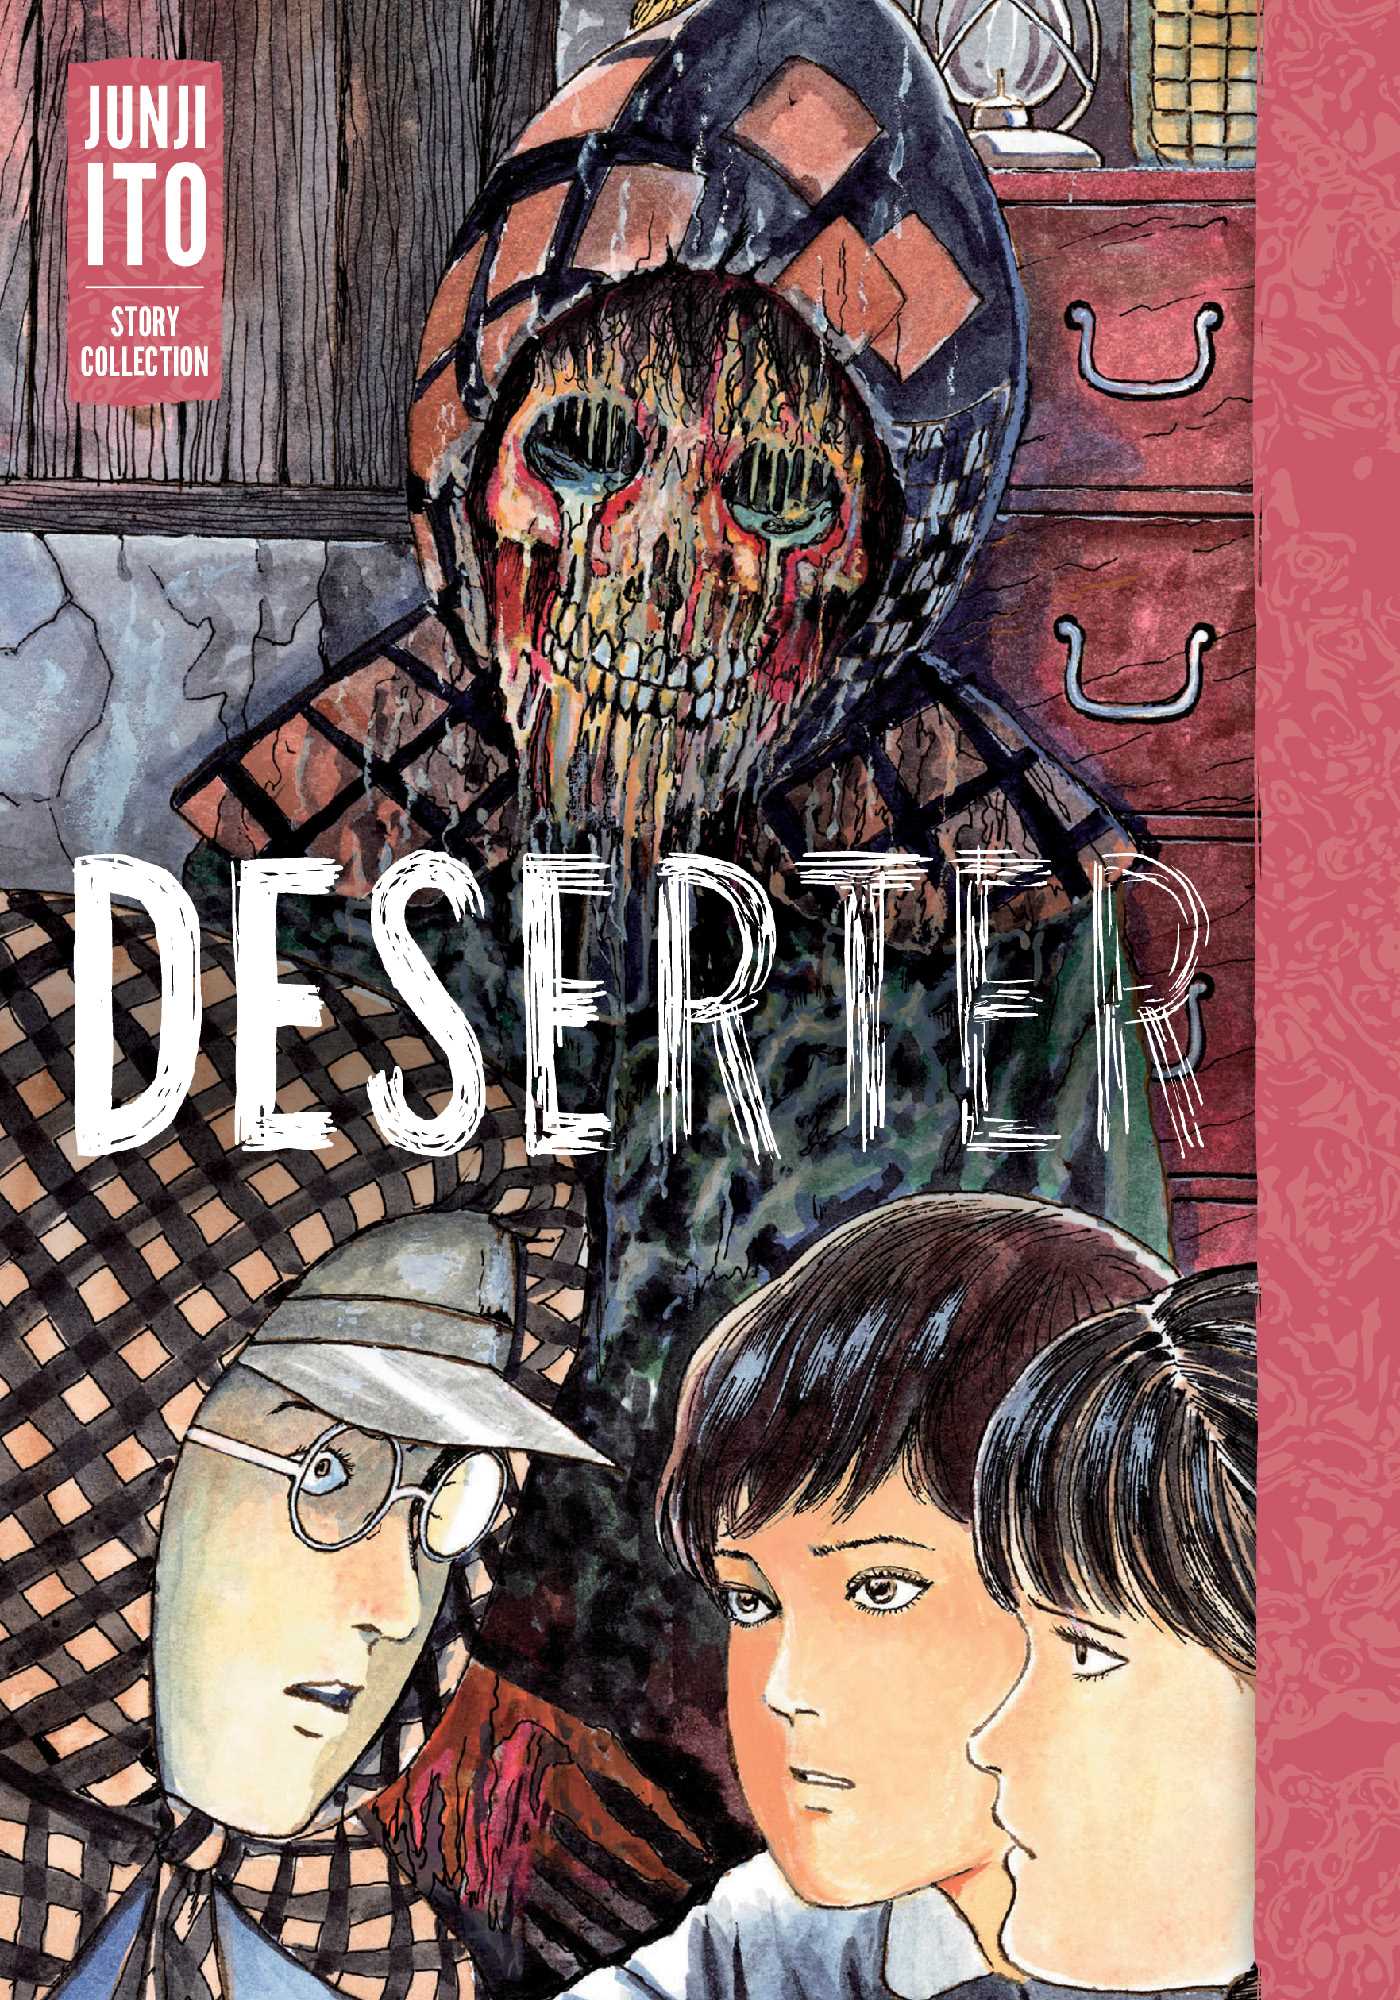 The cover of Deserter